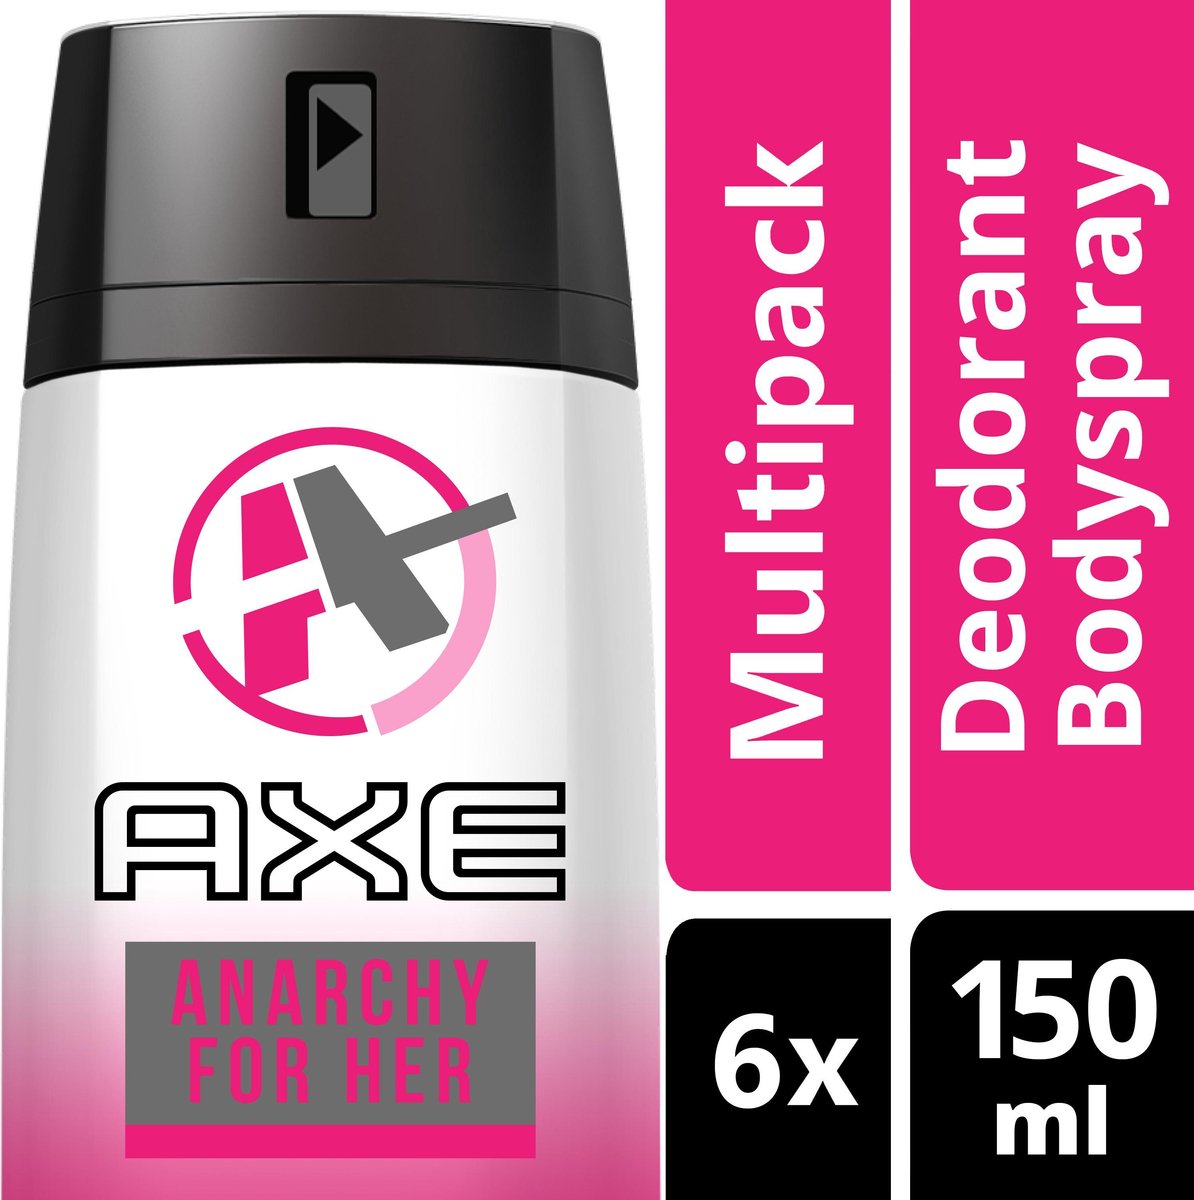 bezig In het algemeen canvas Axe Anarchy For Women - 150 ml - Deodorant Spray - 6 stuks -  Voordeelverpakking | bol.com